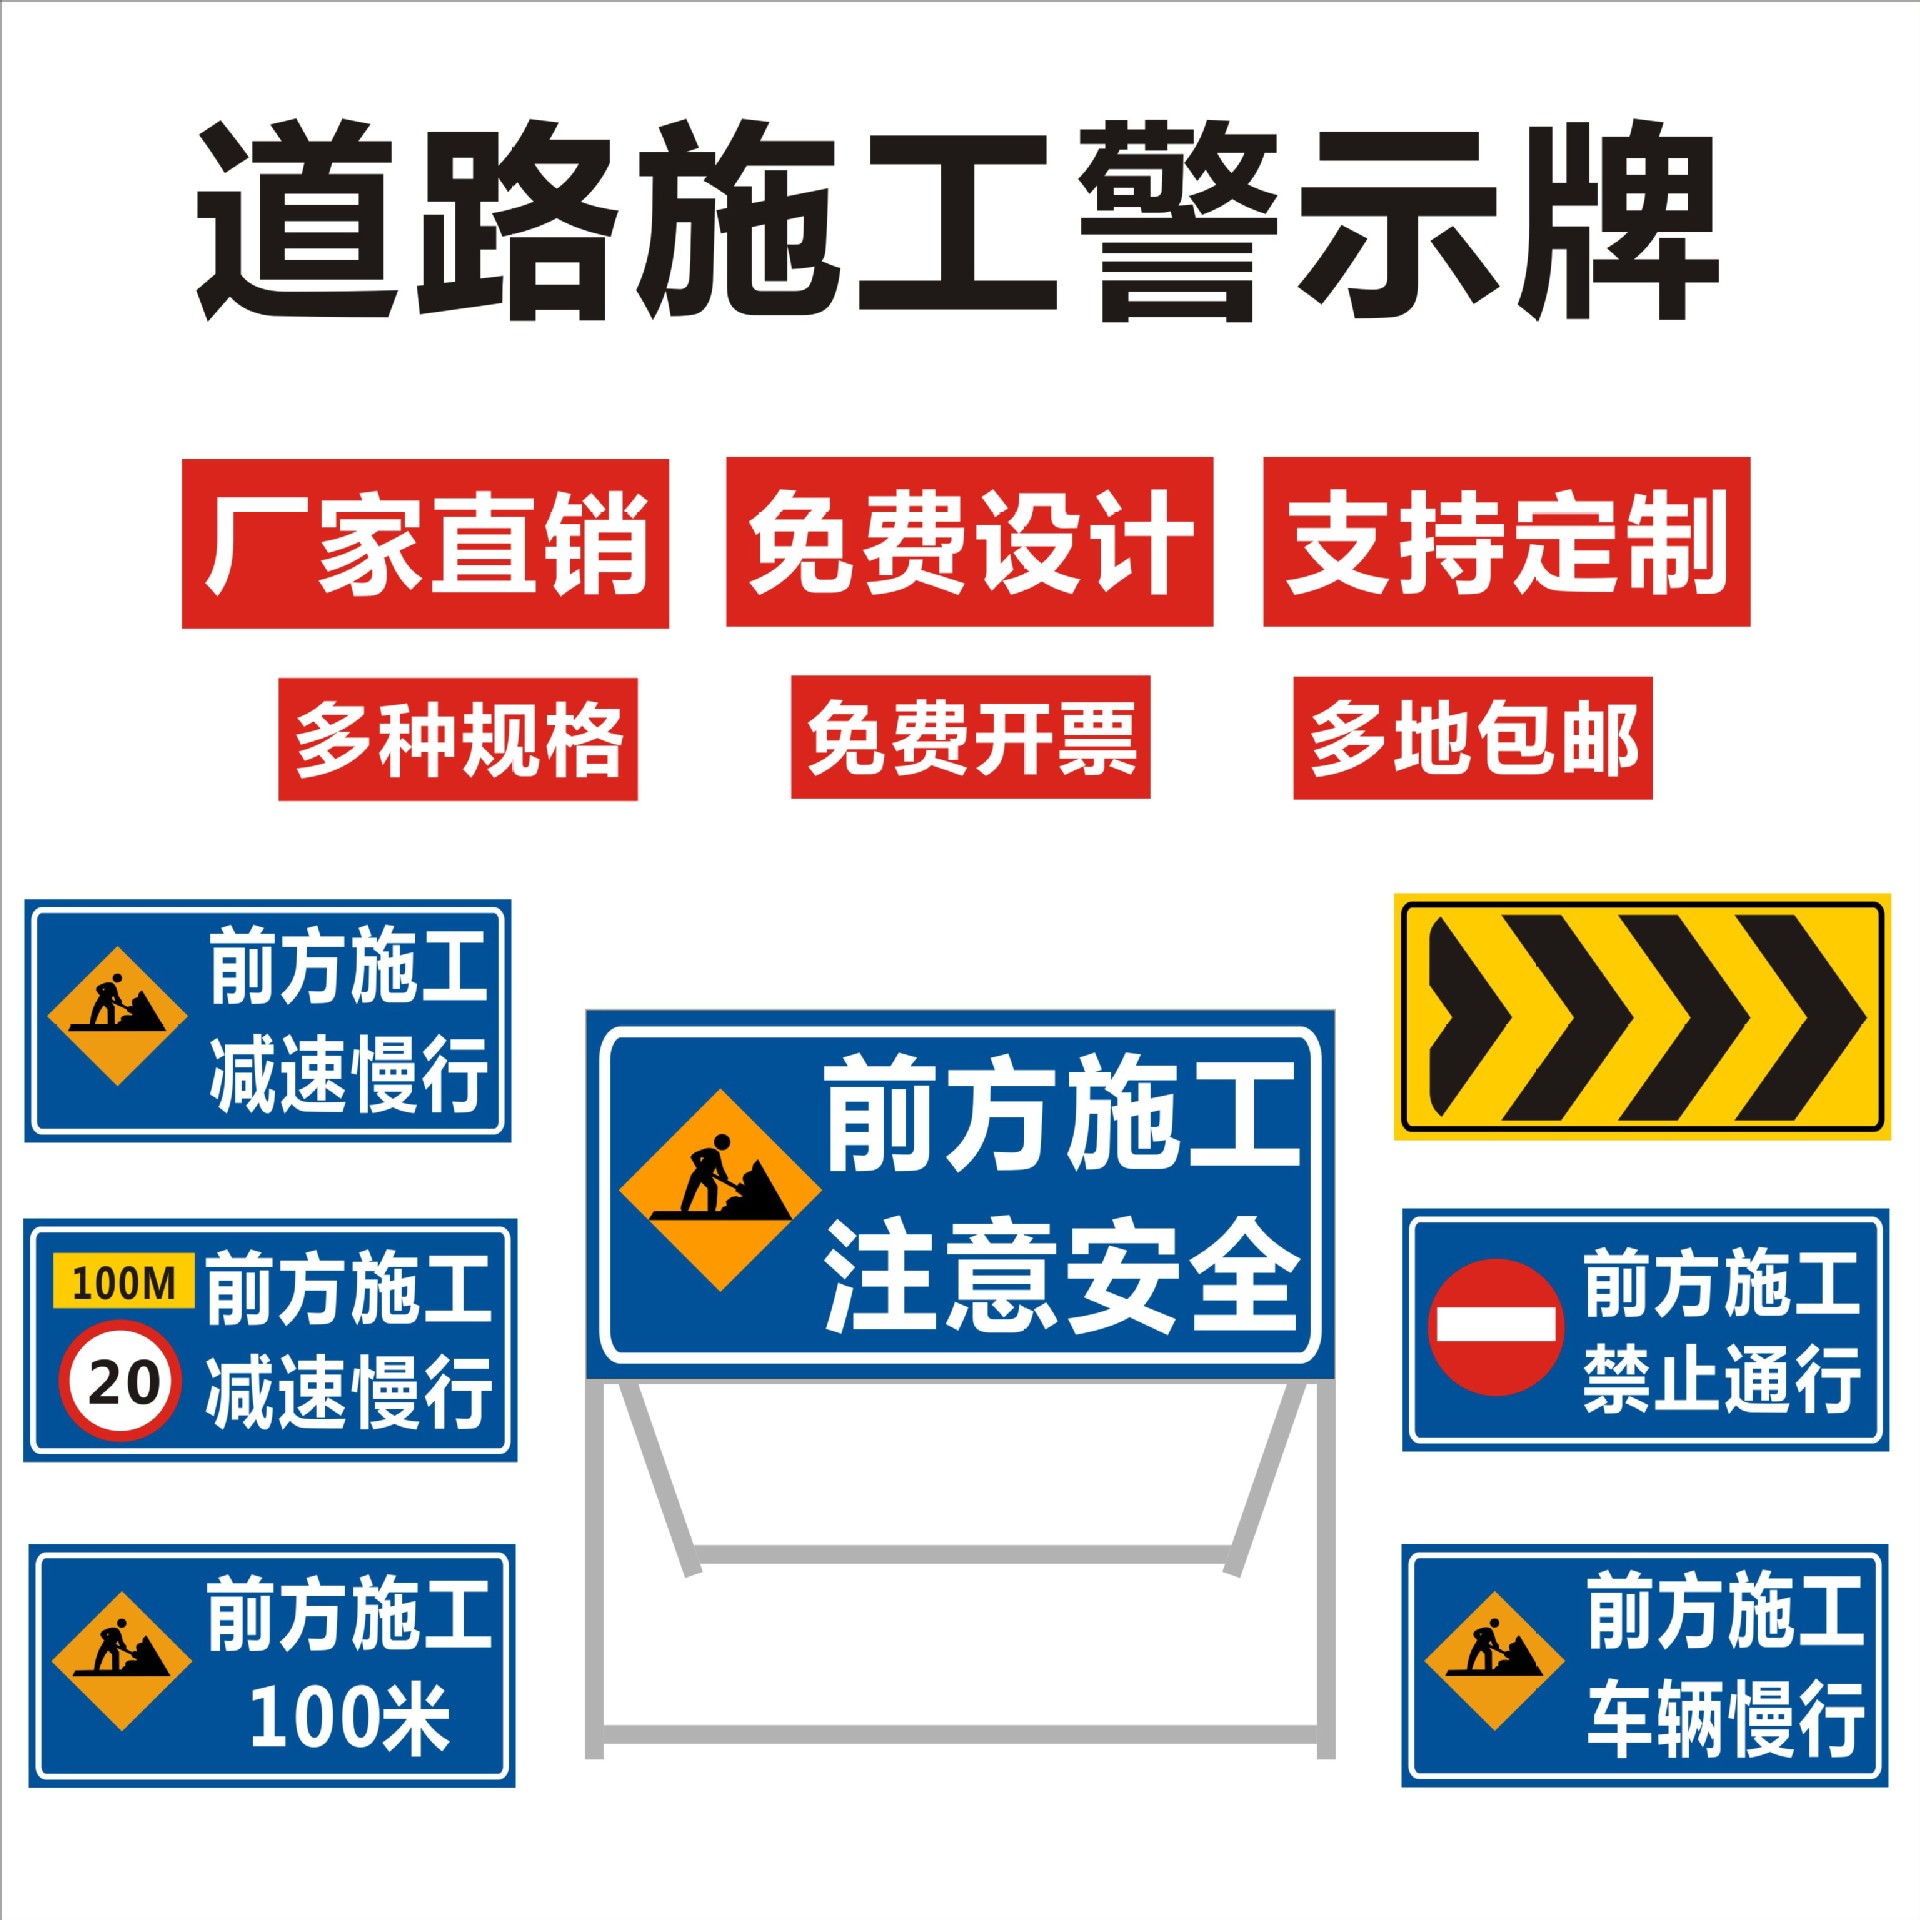 前方道路施工牌交通安全标志警示牌工程告示牌导向反光指示牌订做